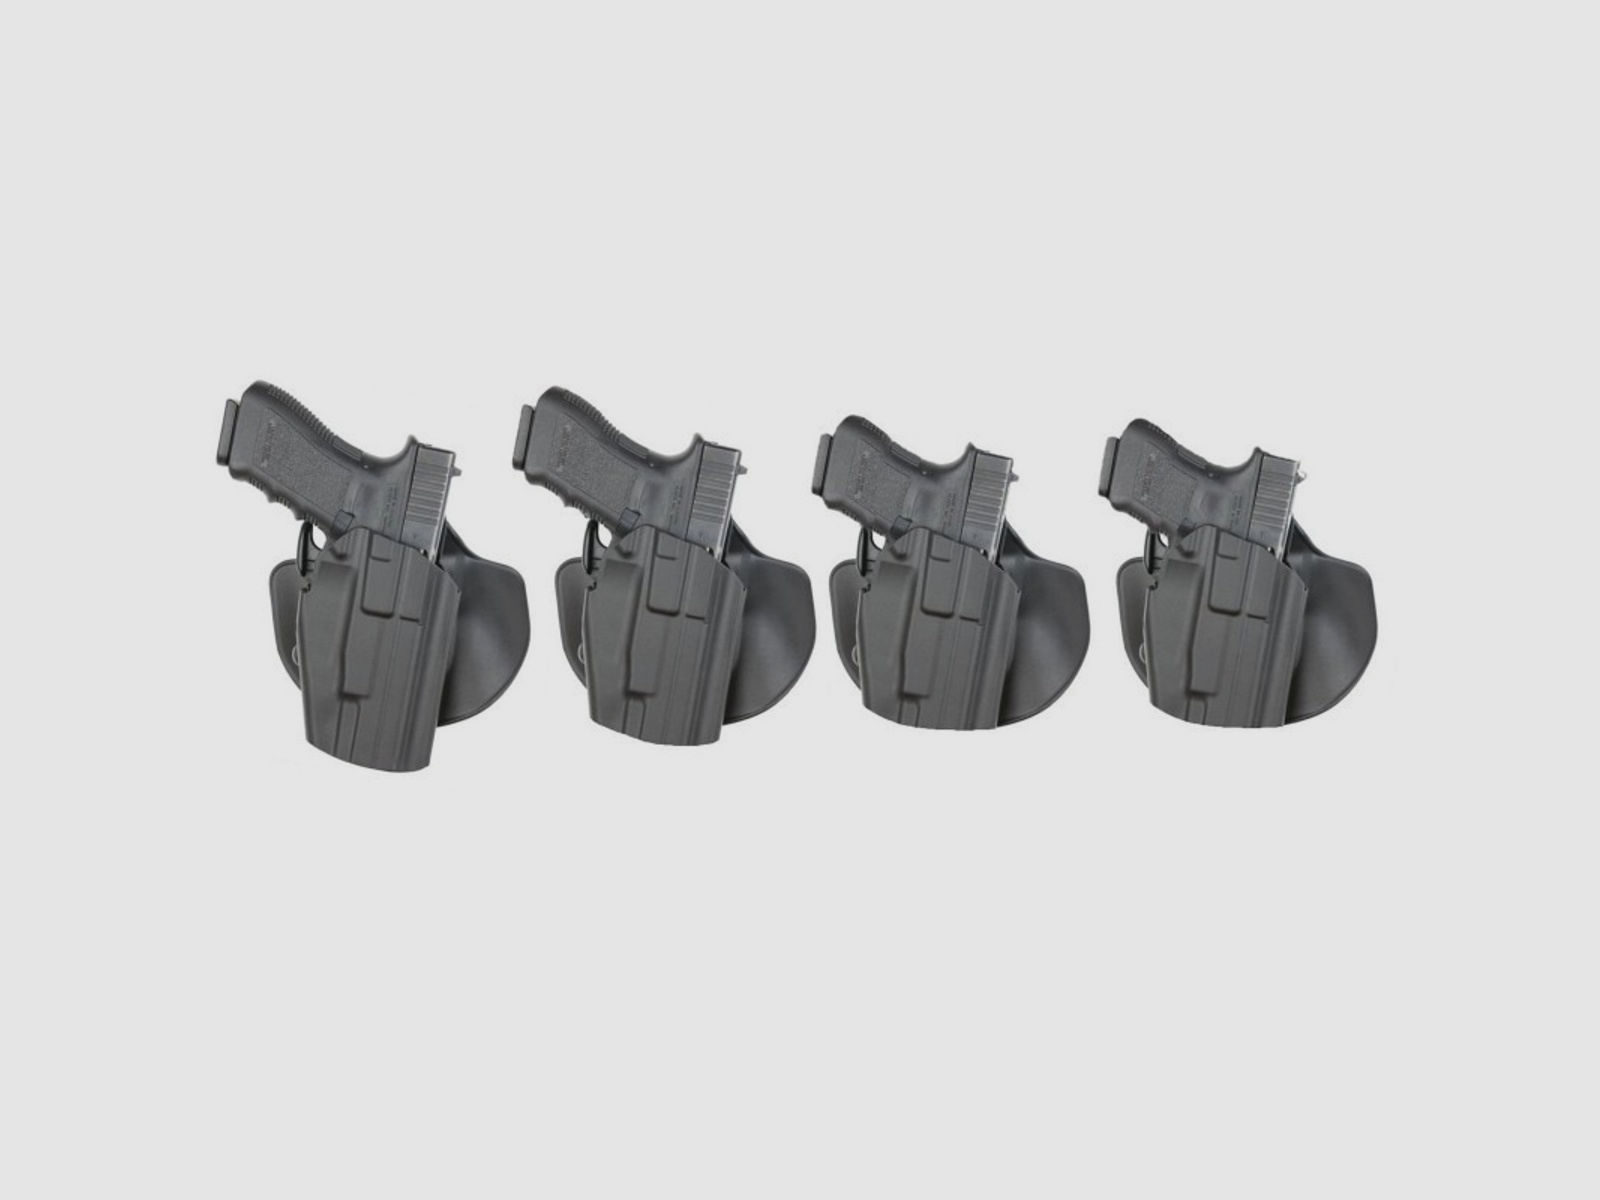 SAFARILAND 578 GLS "PRO-FIT" 7TS Paddleholster 83* CZ P10,Glock 17/20/21/22/31/37,H&K 45/P30L/VP40/USP,S&amp;W M&amp;P,Sig Sauer P225,Taurus PT809/PT840/PT845-Beige-Links